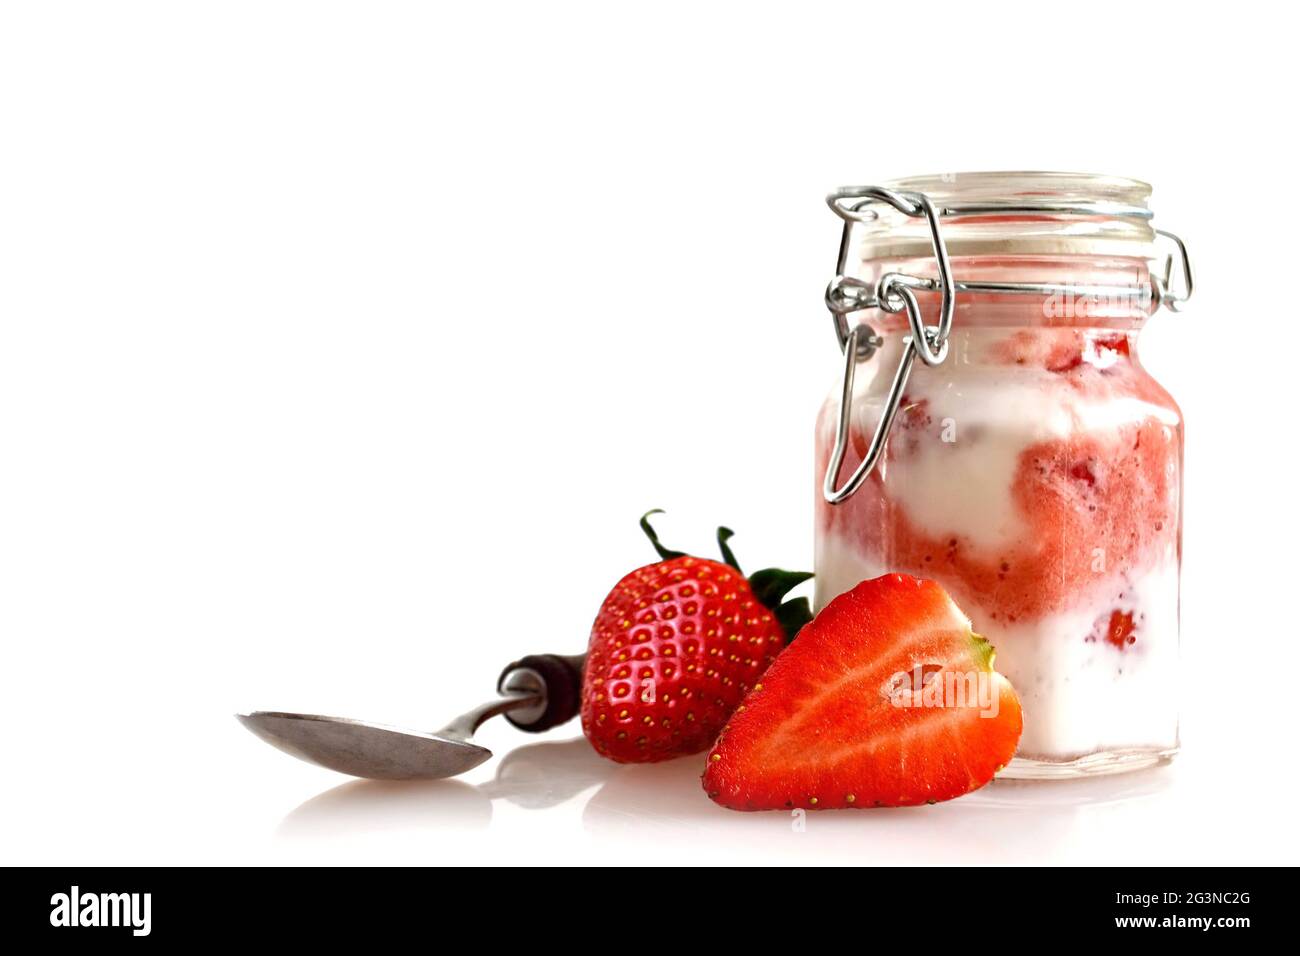 Strawberry yoghurt isolated on white background Stock Photo